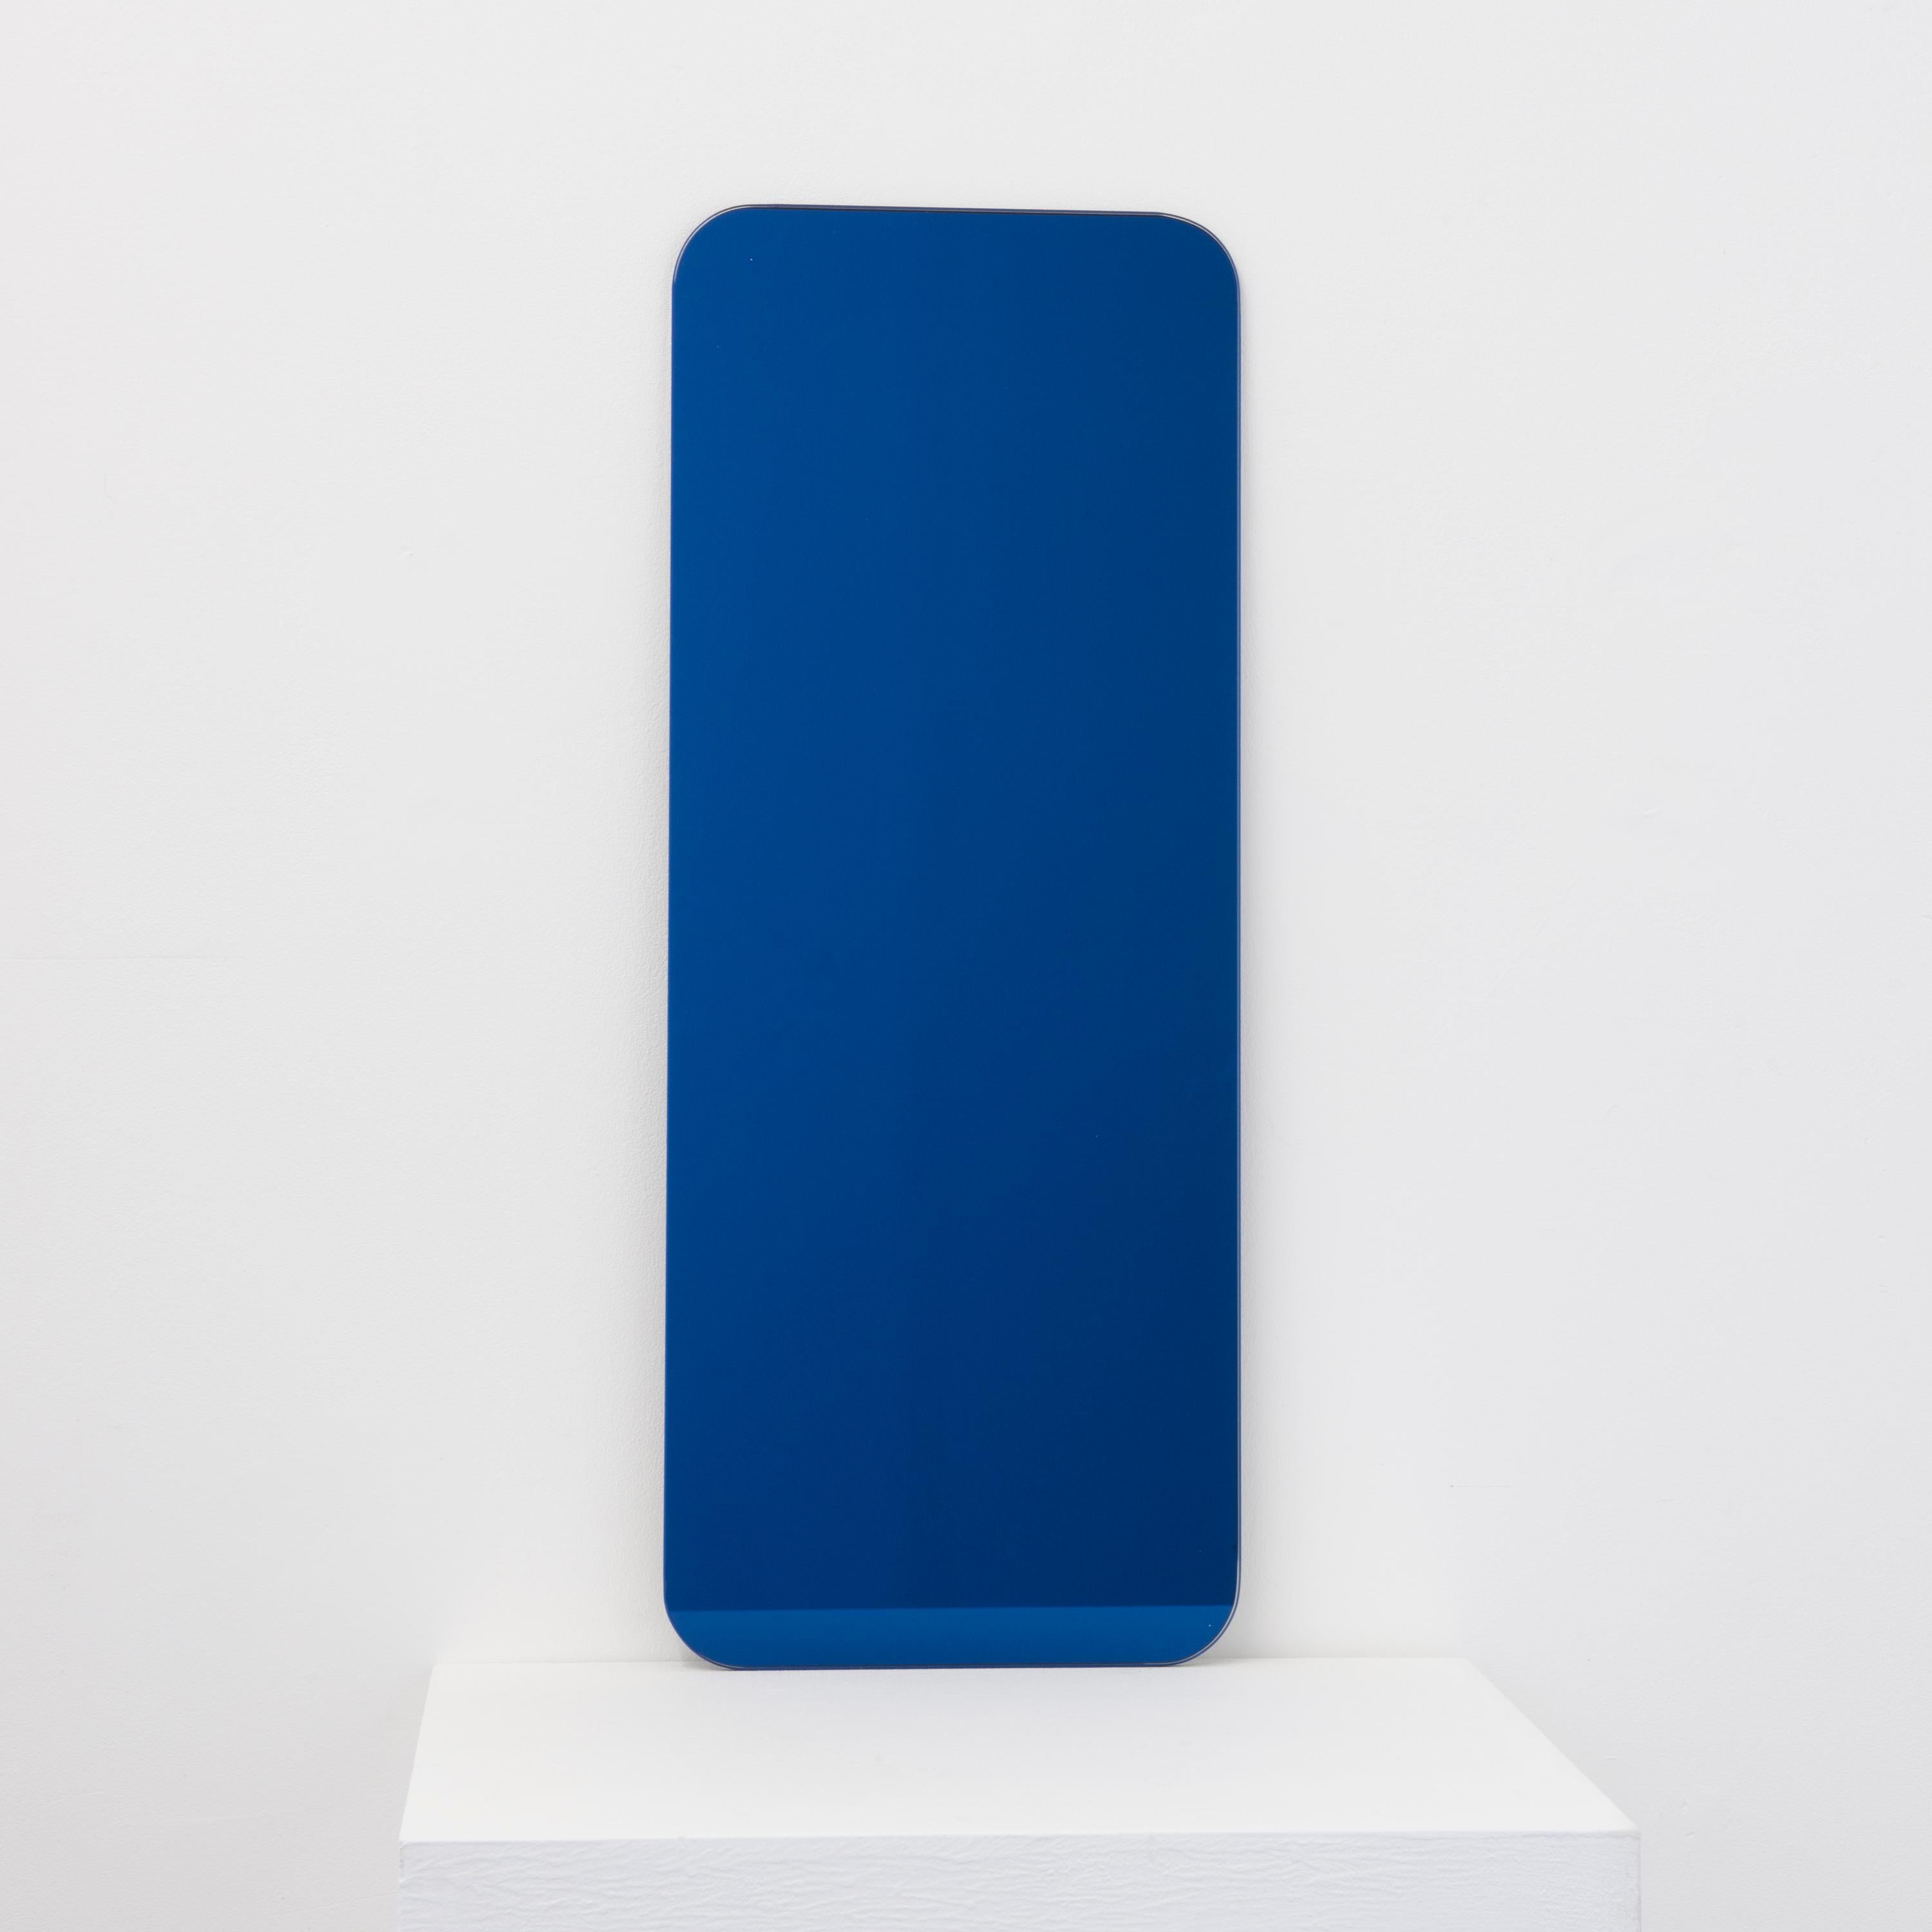 Quadris Blue Rectangular Frameless Contemporary Mirror, Medium For Sale 1